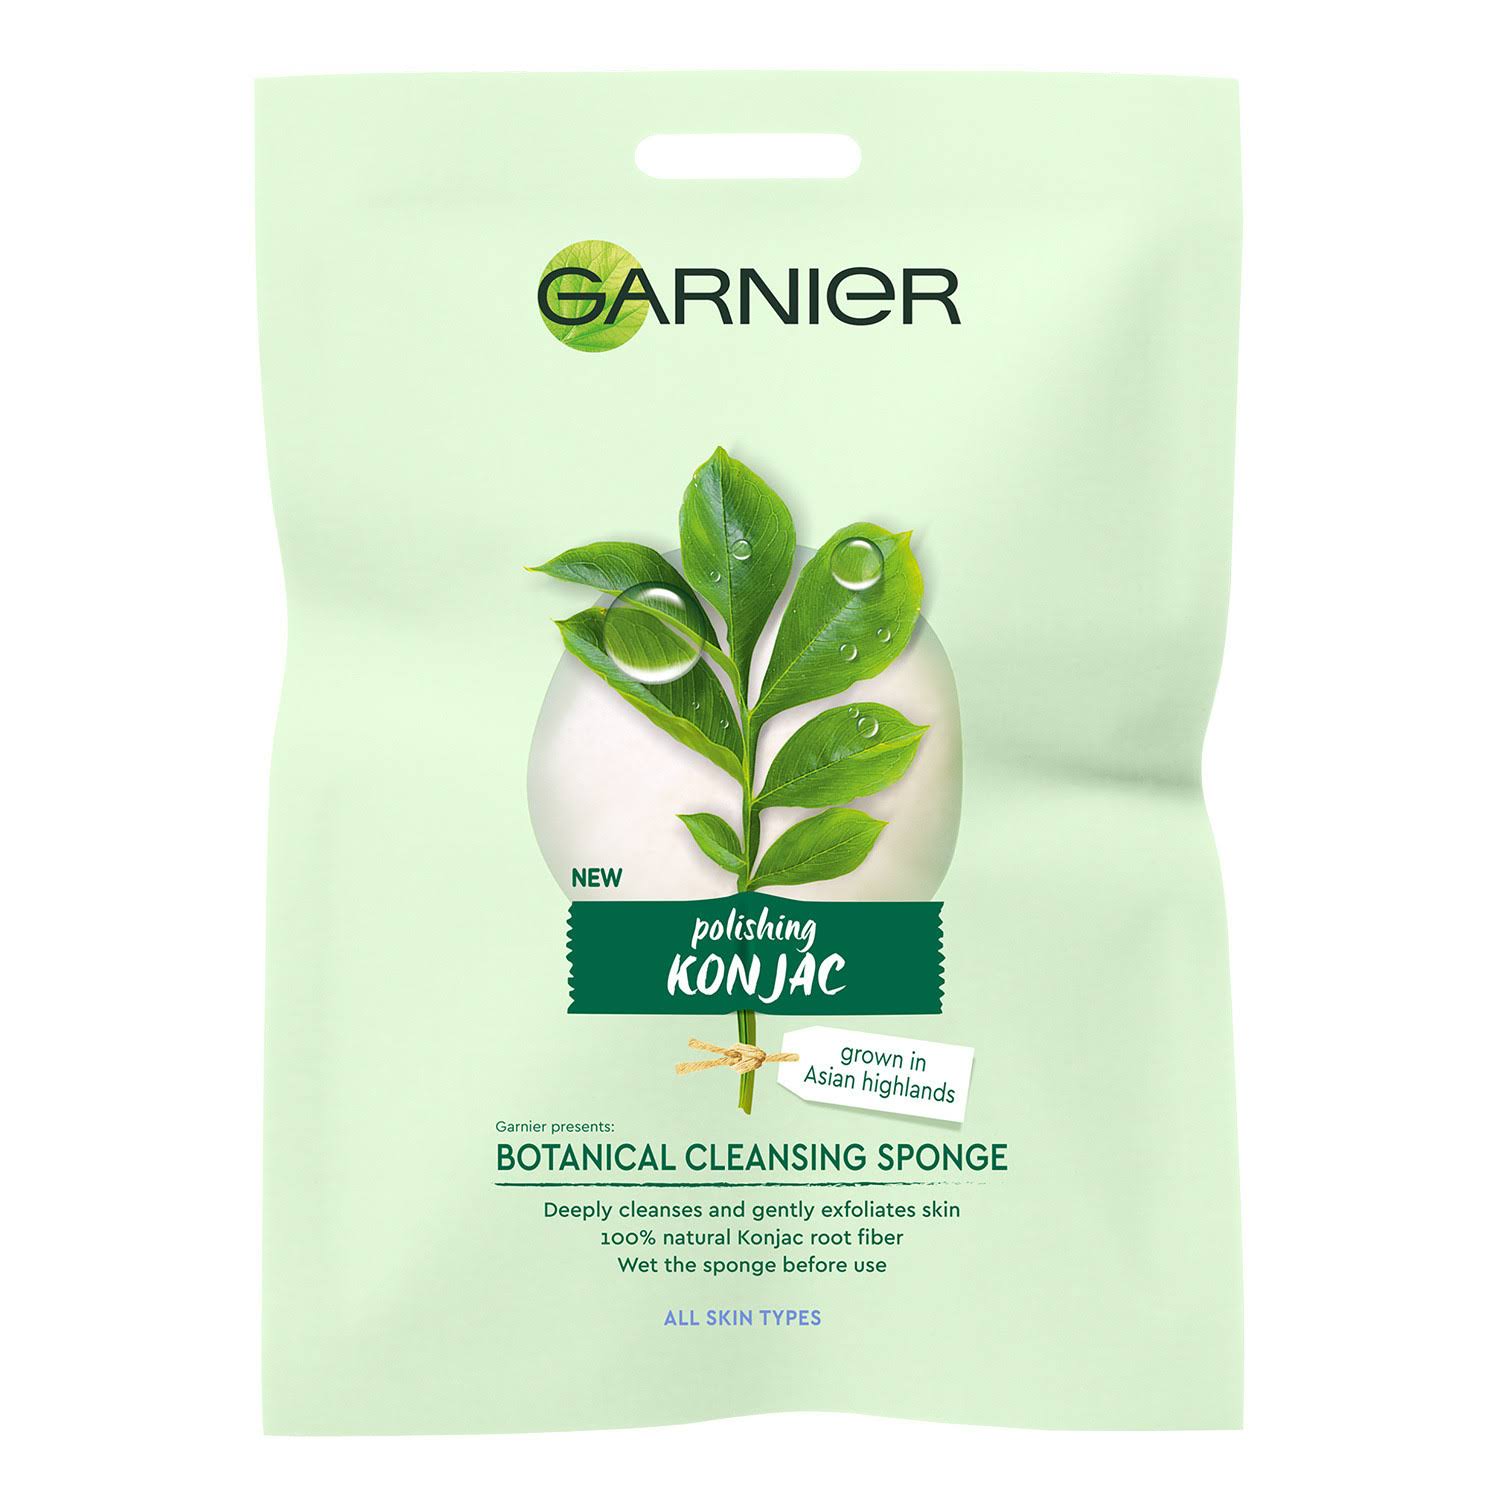 Garnier Organic Konjac Botanical Cleansing Sponge 100% Reusable